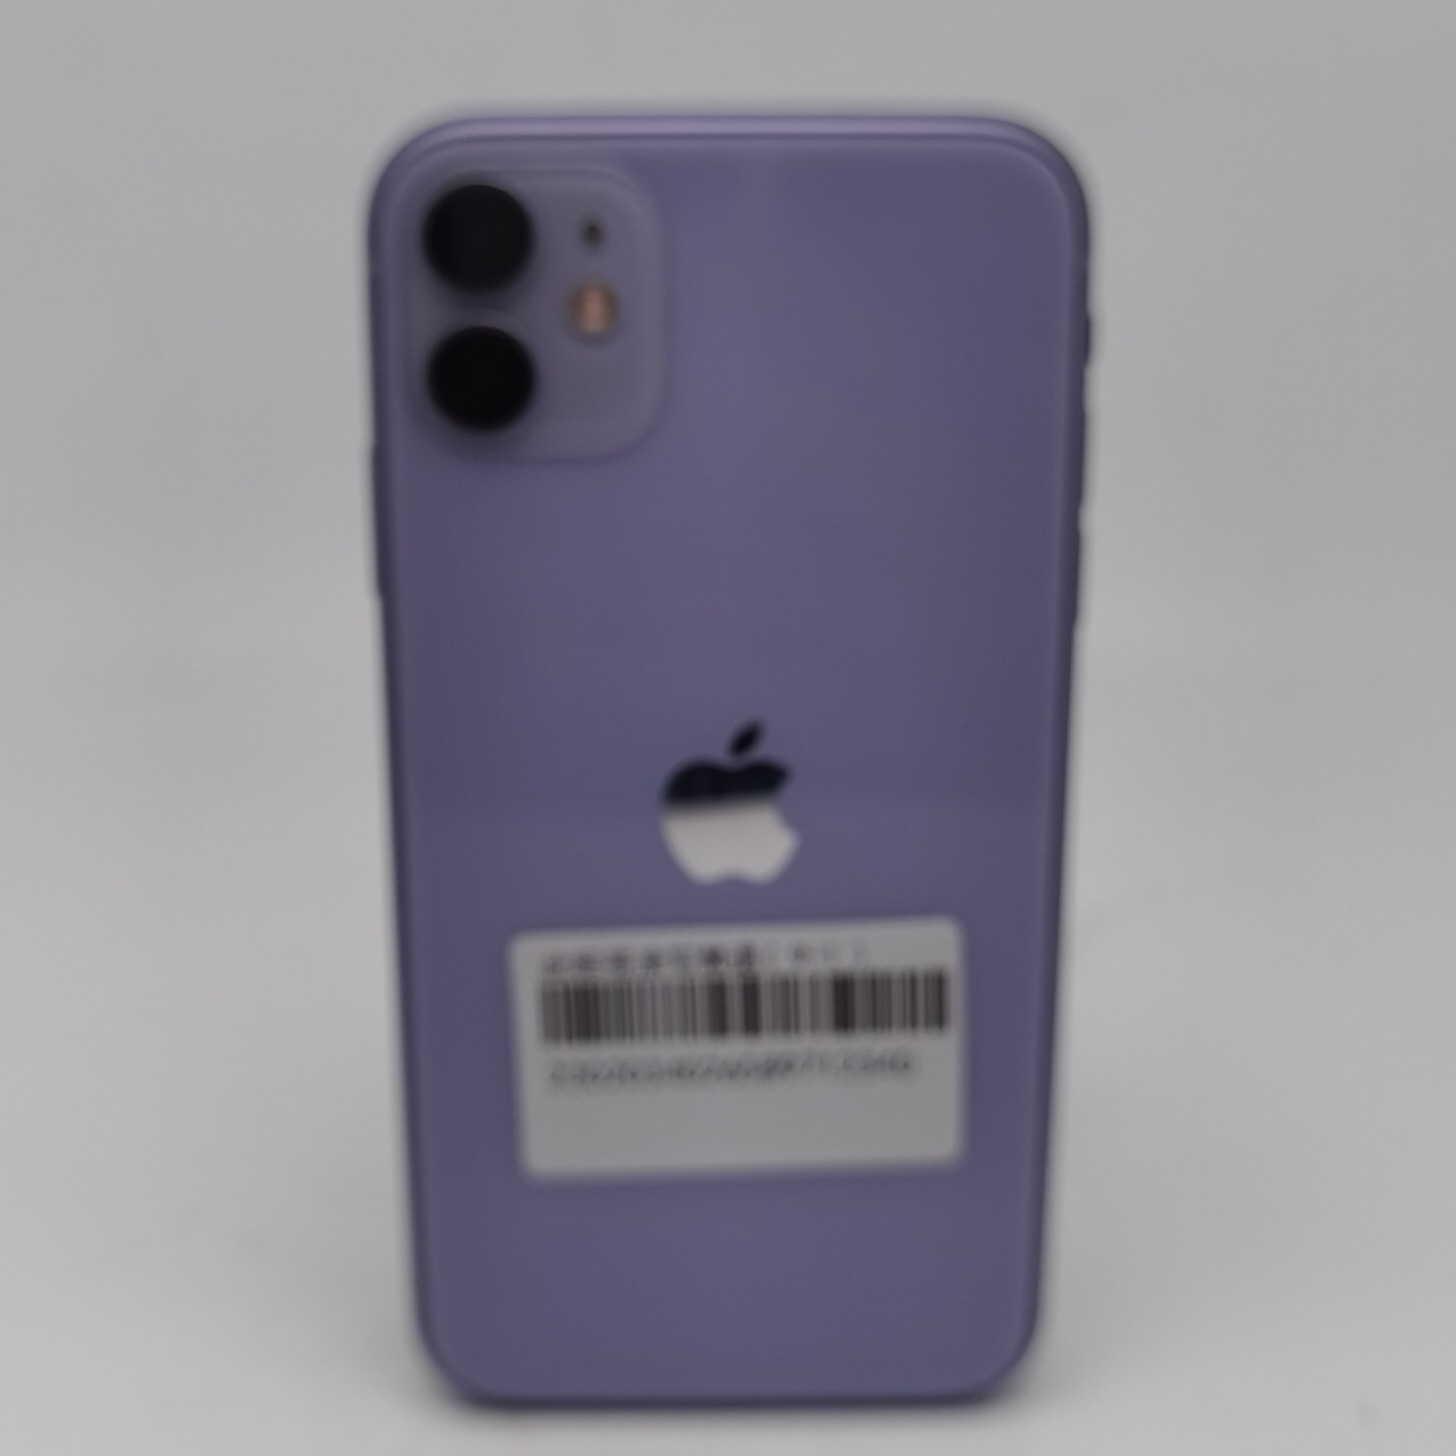 苹果【iPhone 11】紫色 64G 国行 8成新 